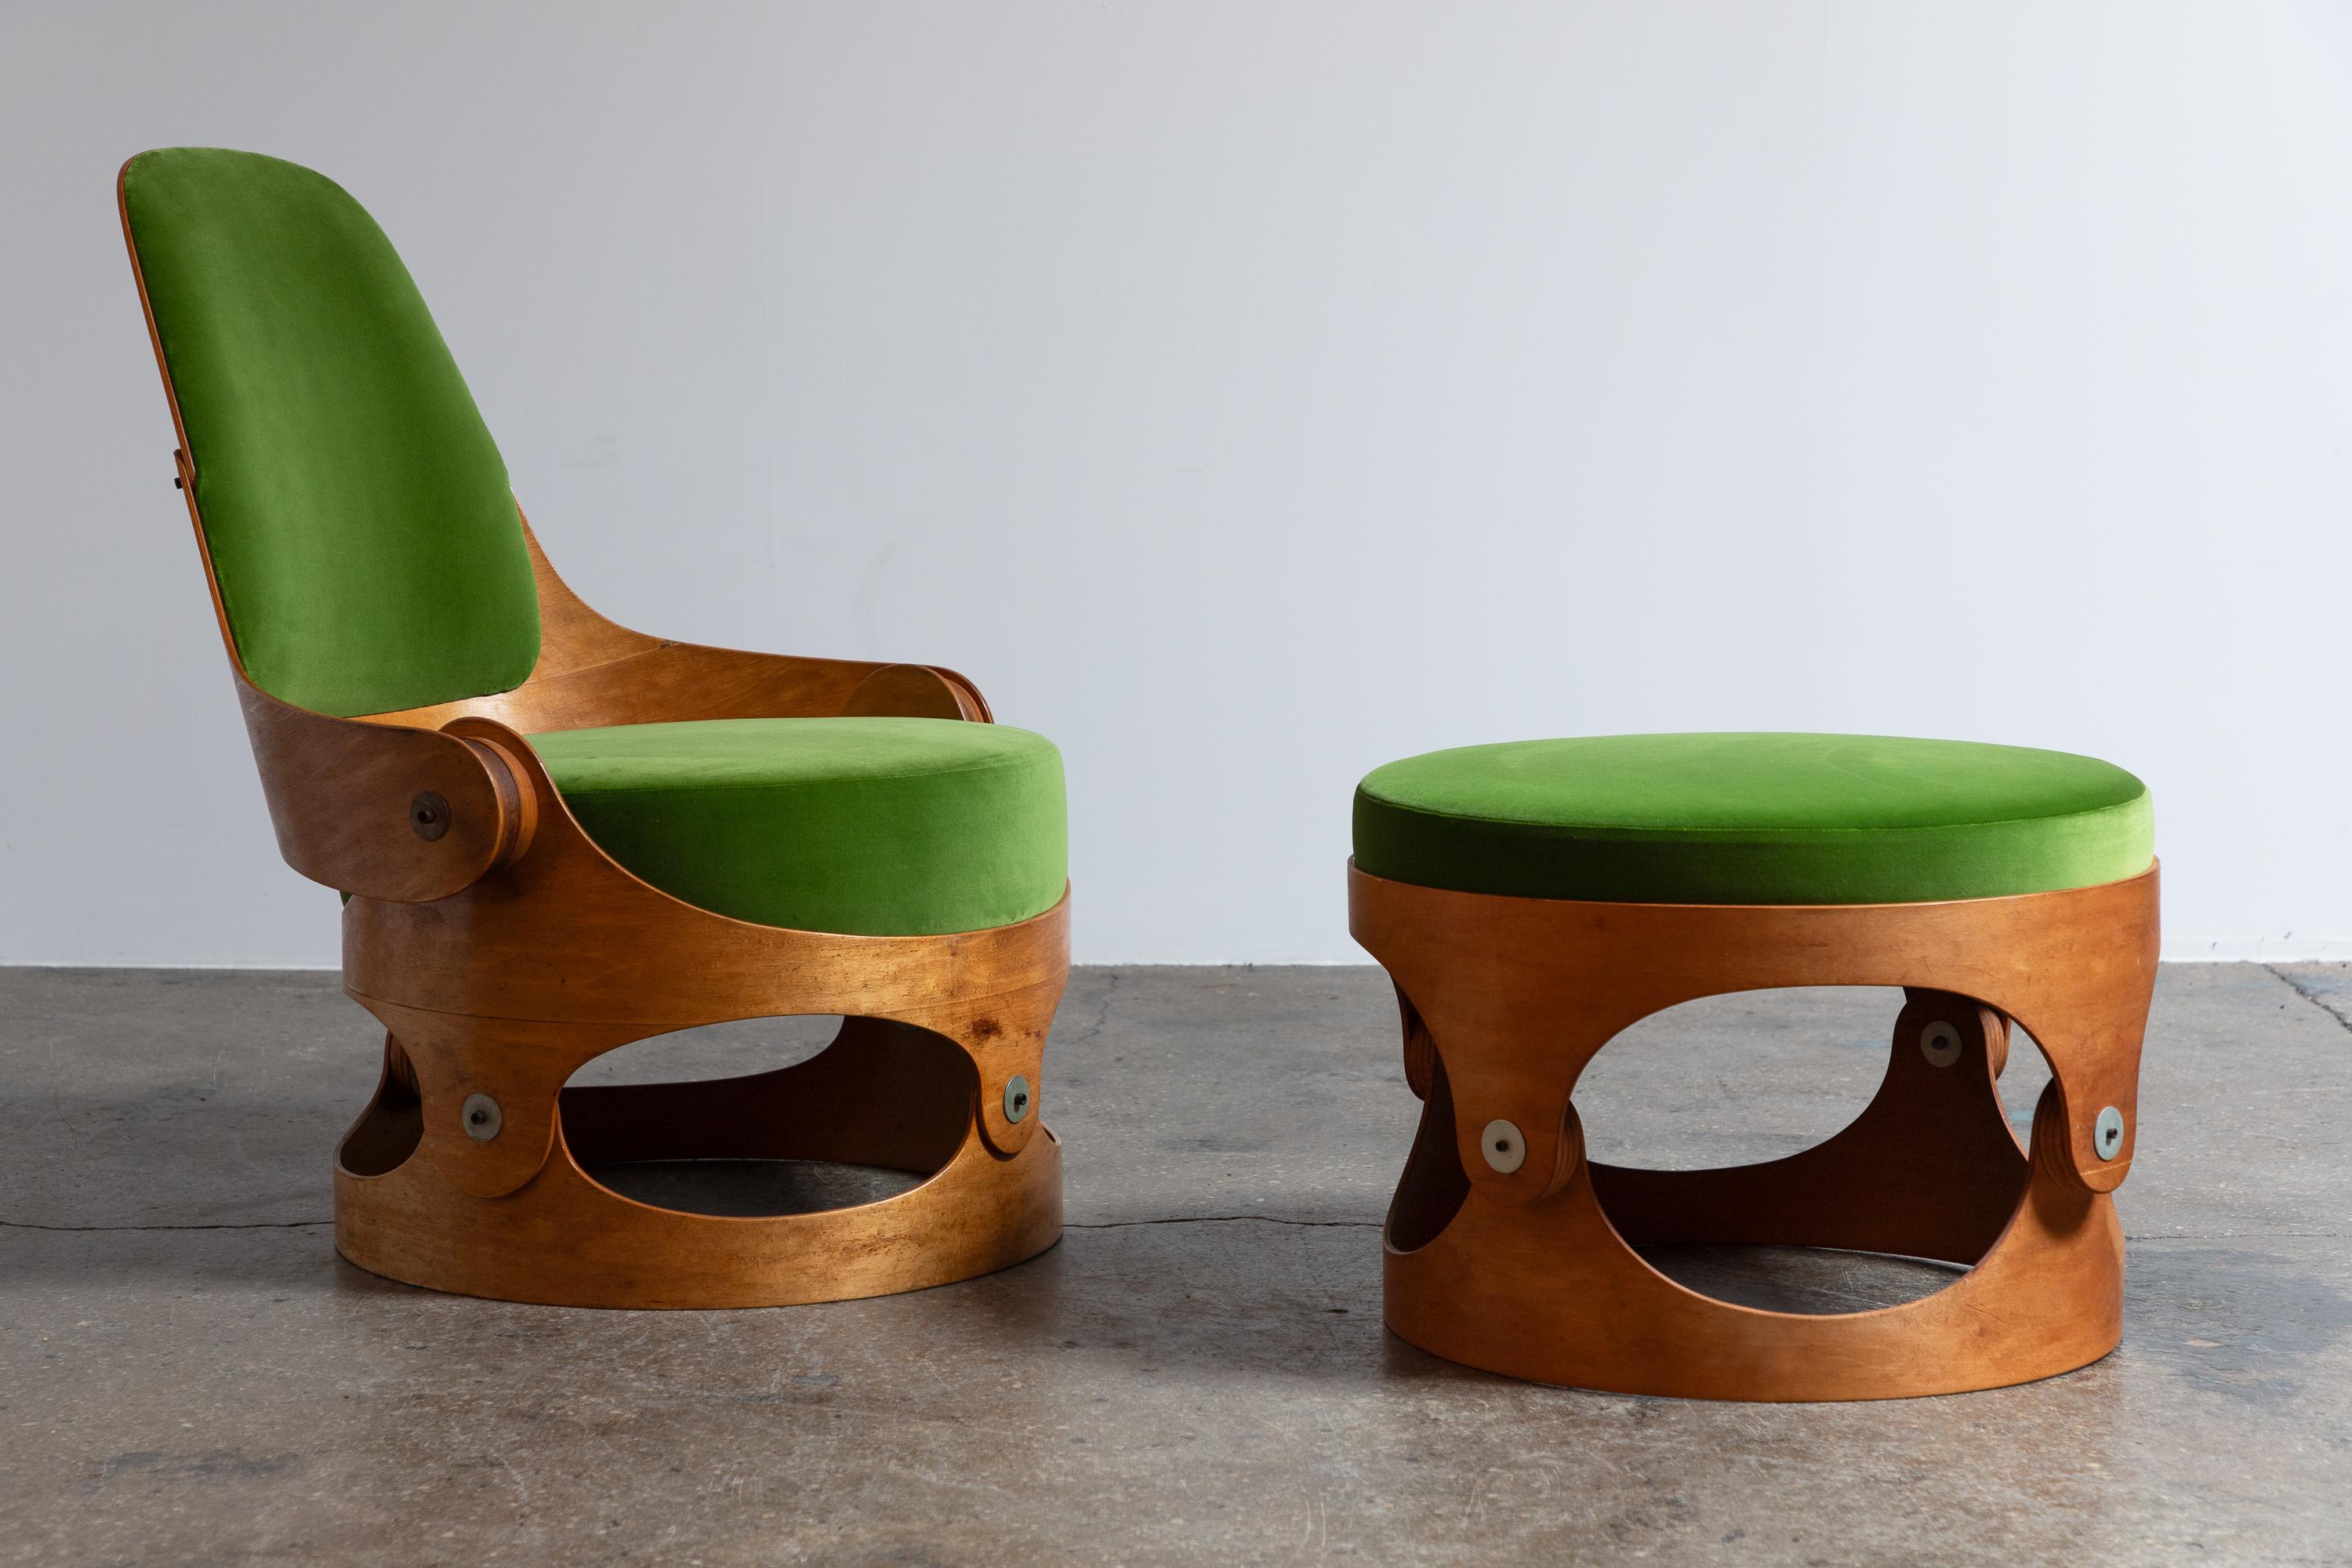 Modernistischer Stuhl und Ottomane aus gebogenem Sperrholz, entworfen vom Architekten Leandre Poisson. Der Stuhl besteht aus gebogenen Sperrholzstrukturen, die mit freiliegenden Beschlägen verbunden und mit großzügigen Kissen ausgestattet sind. In